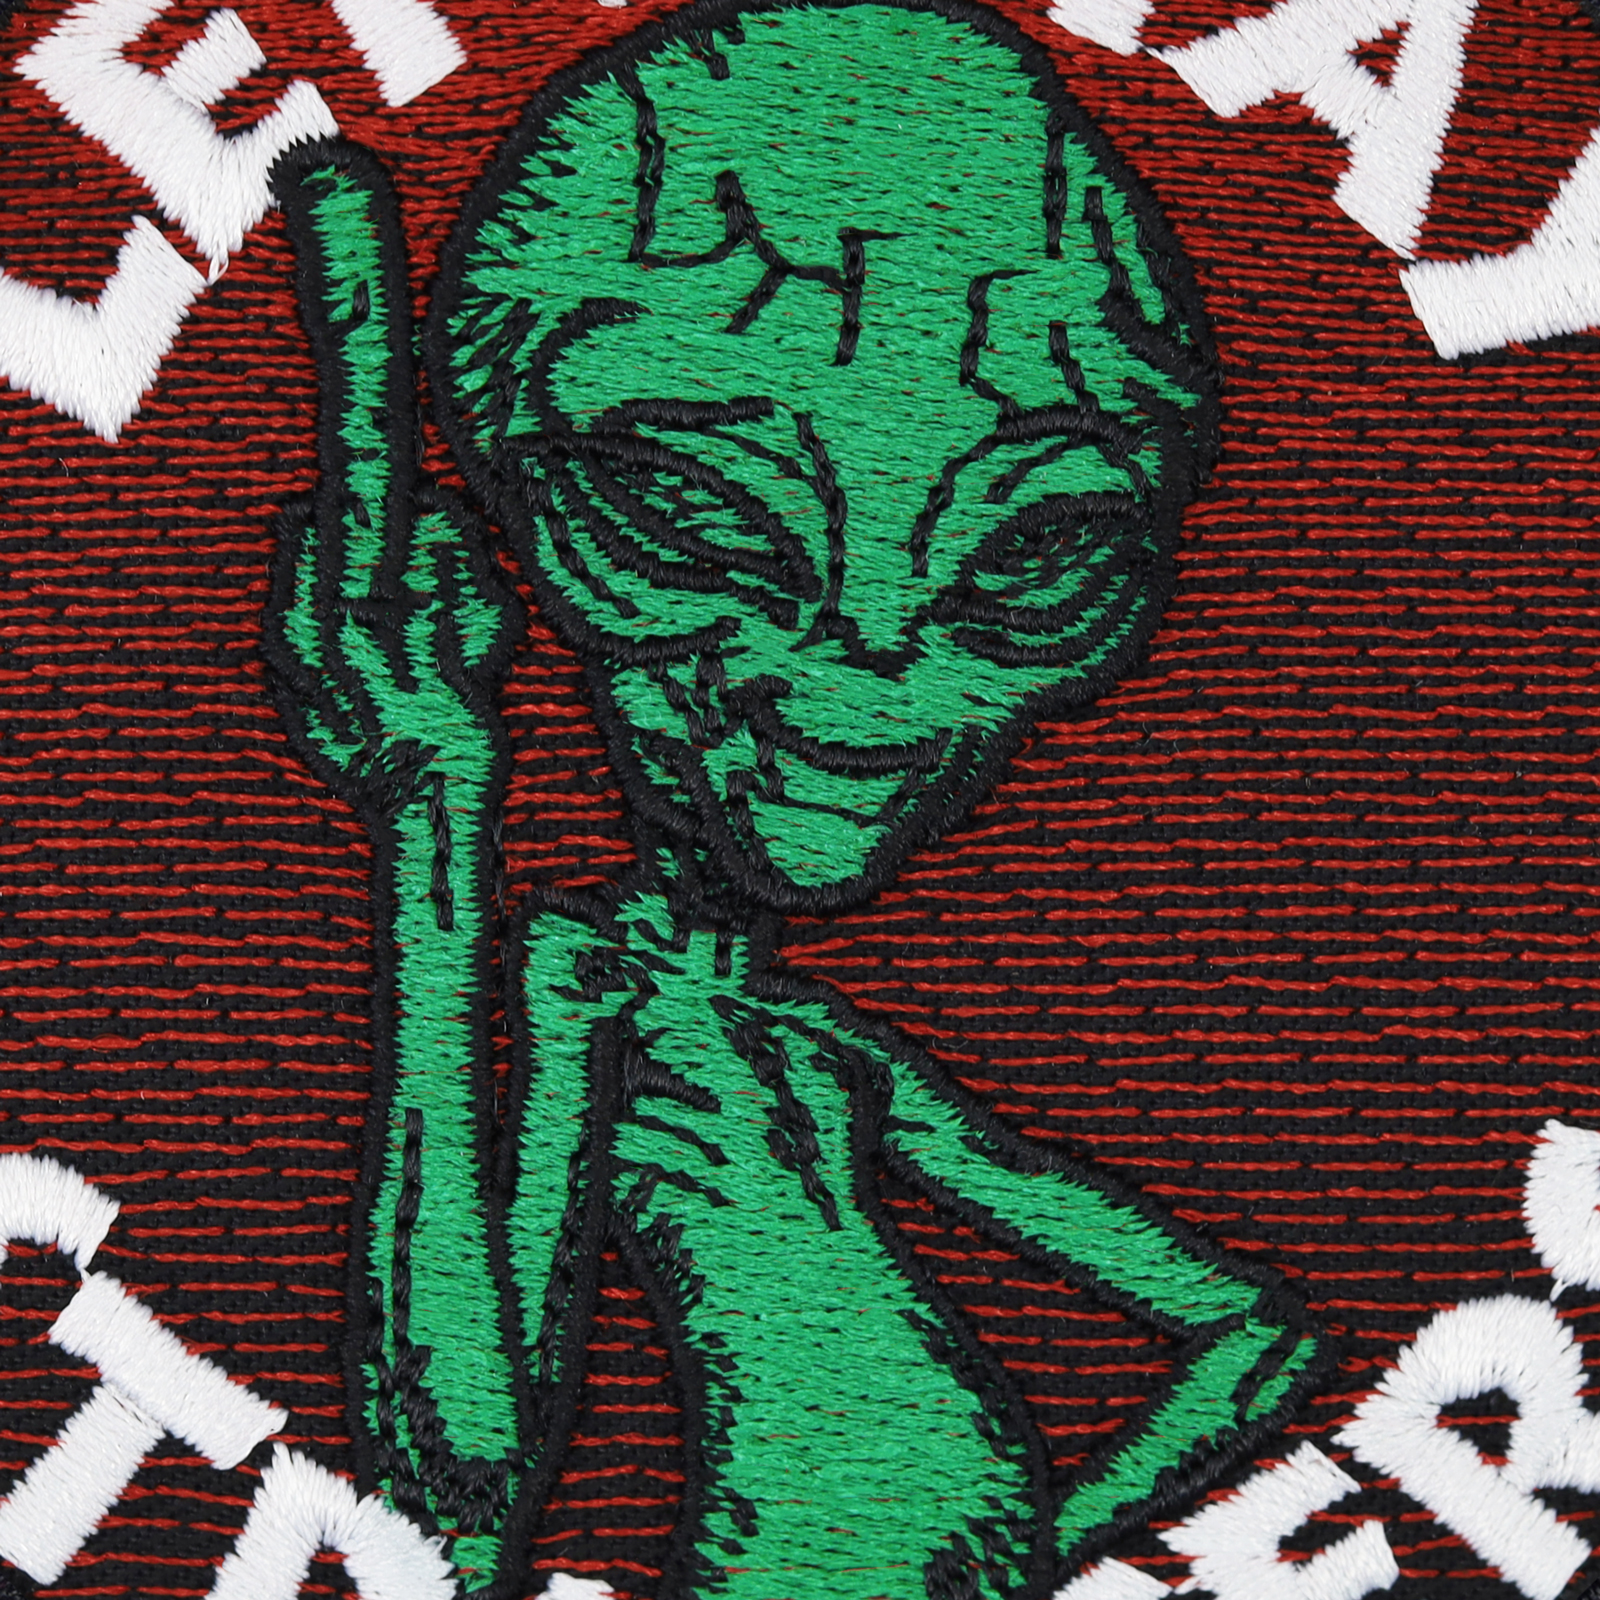 Lets stay strangers - Alien - Patch